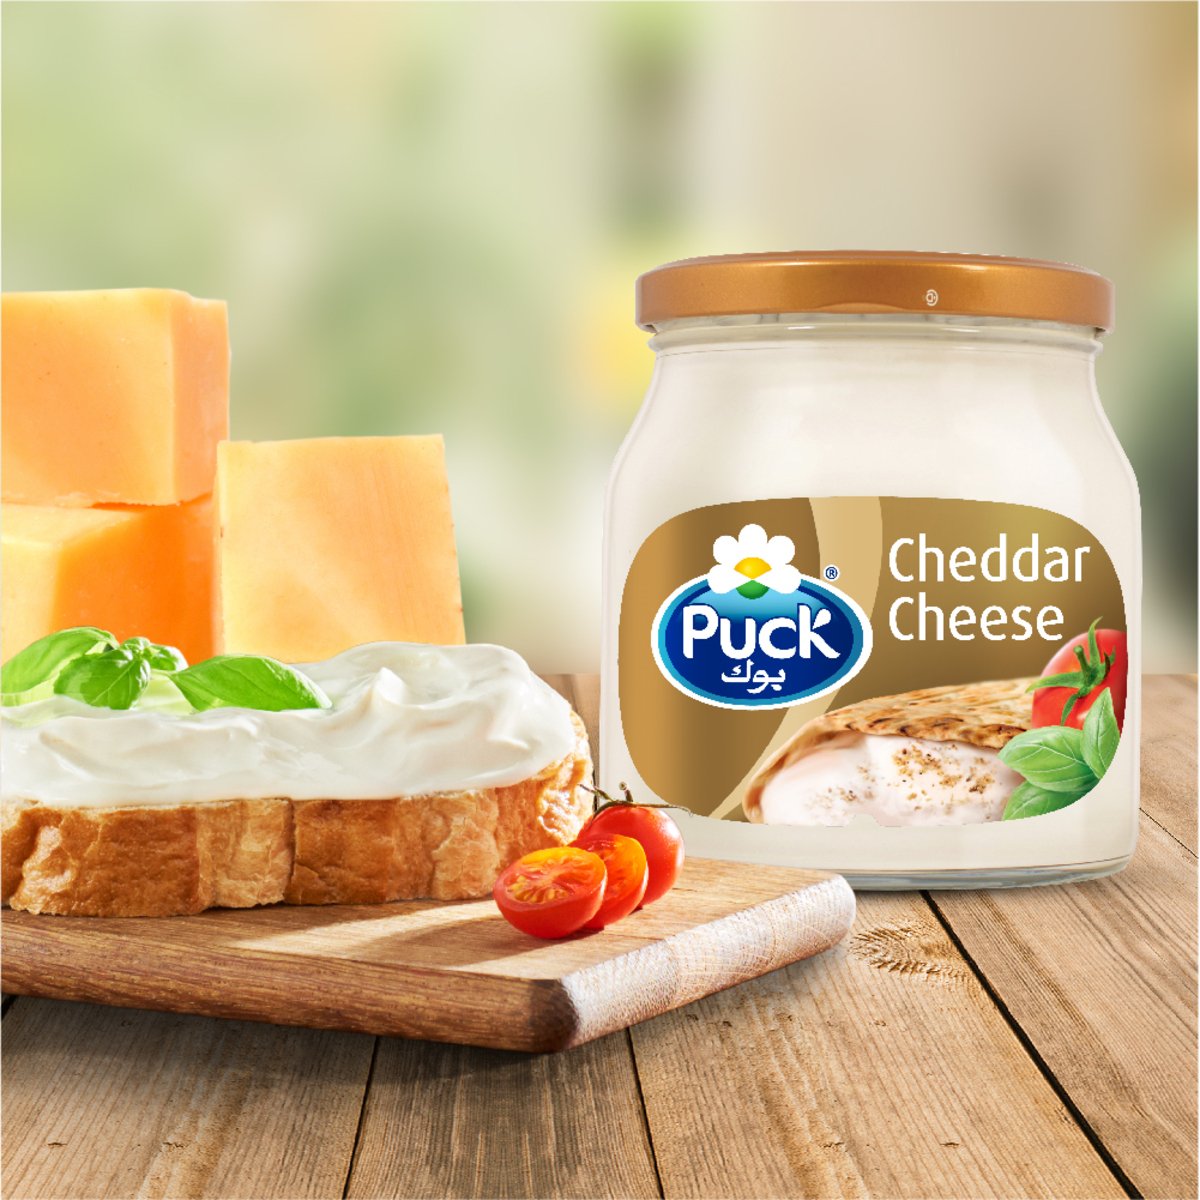 Puck Cheddar Cream Cheese Spread Jar 240 g